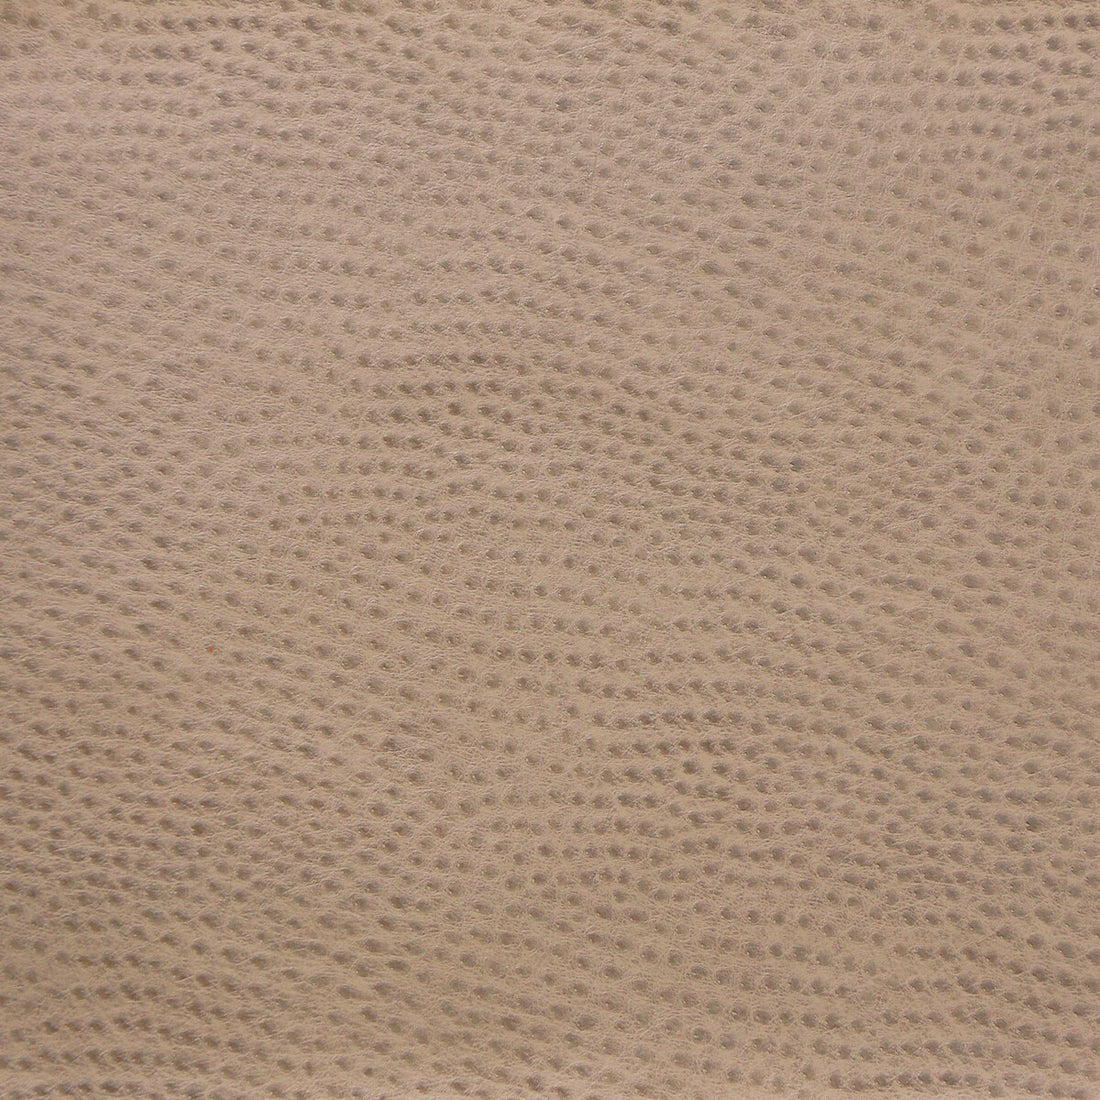 Kravet Design fabric in delaney-1616 color - pattern DELANEY.1616.0 - by Kravet Design